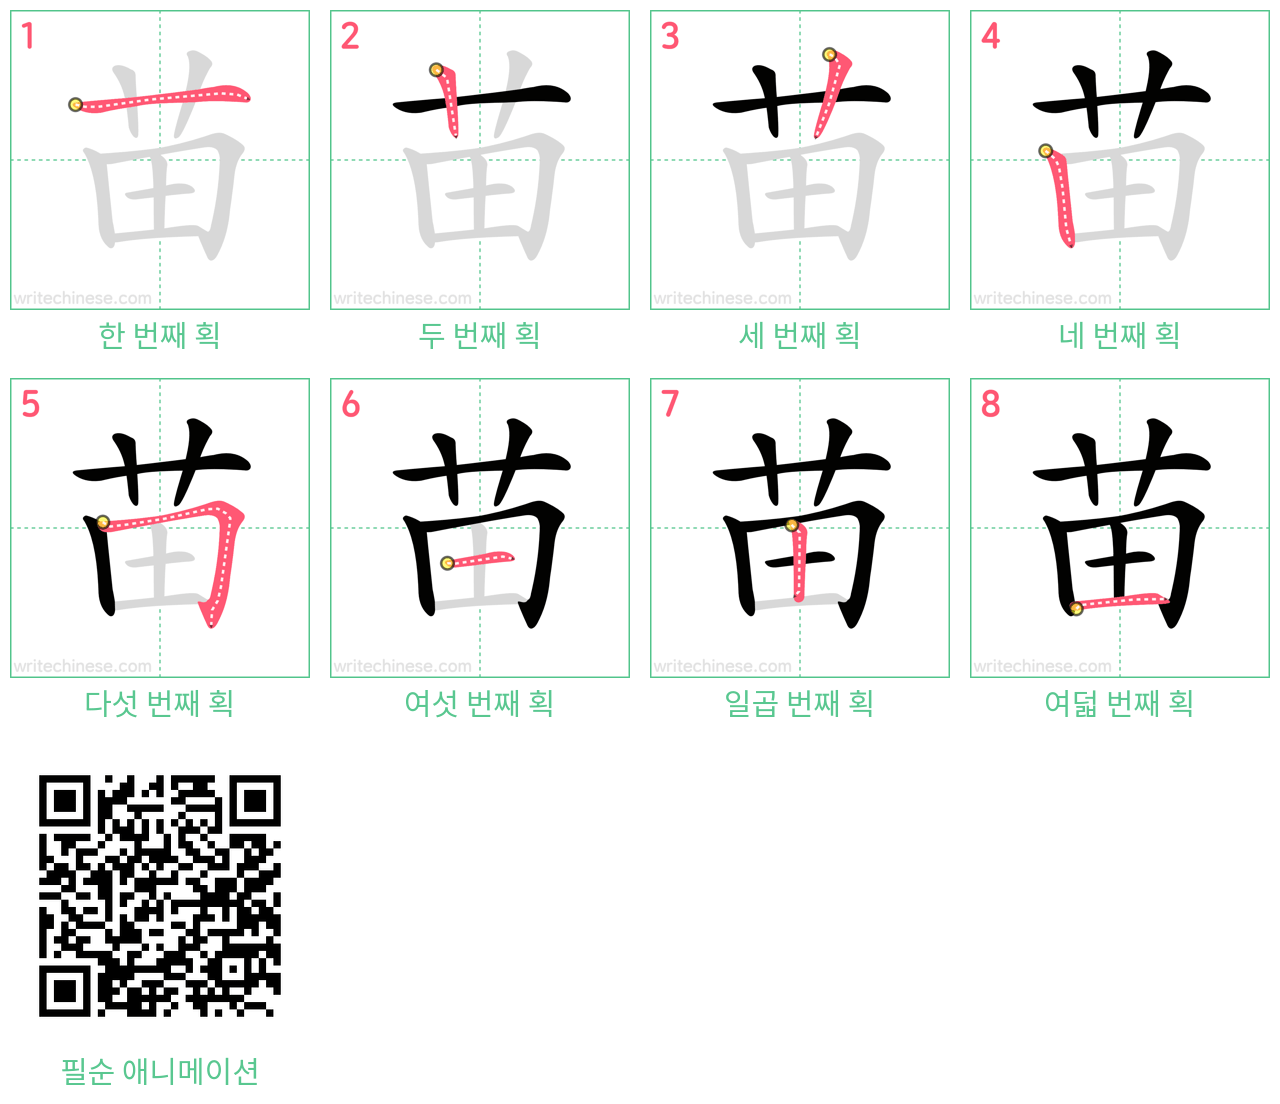 苗 step-by-step stroke order diagrams